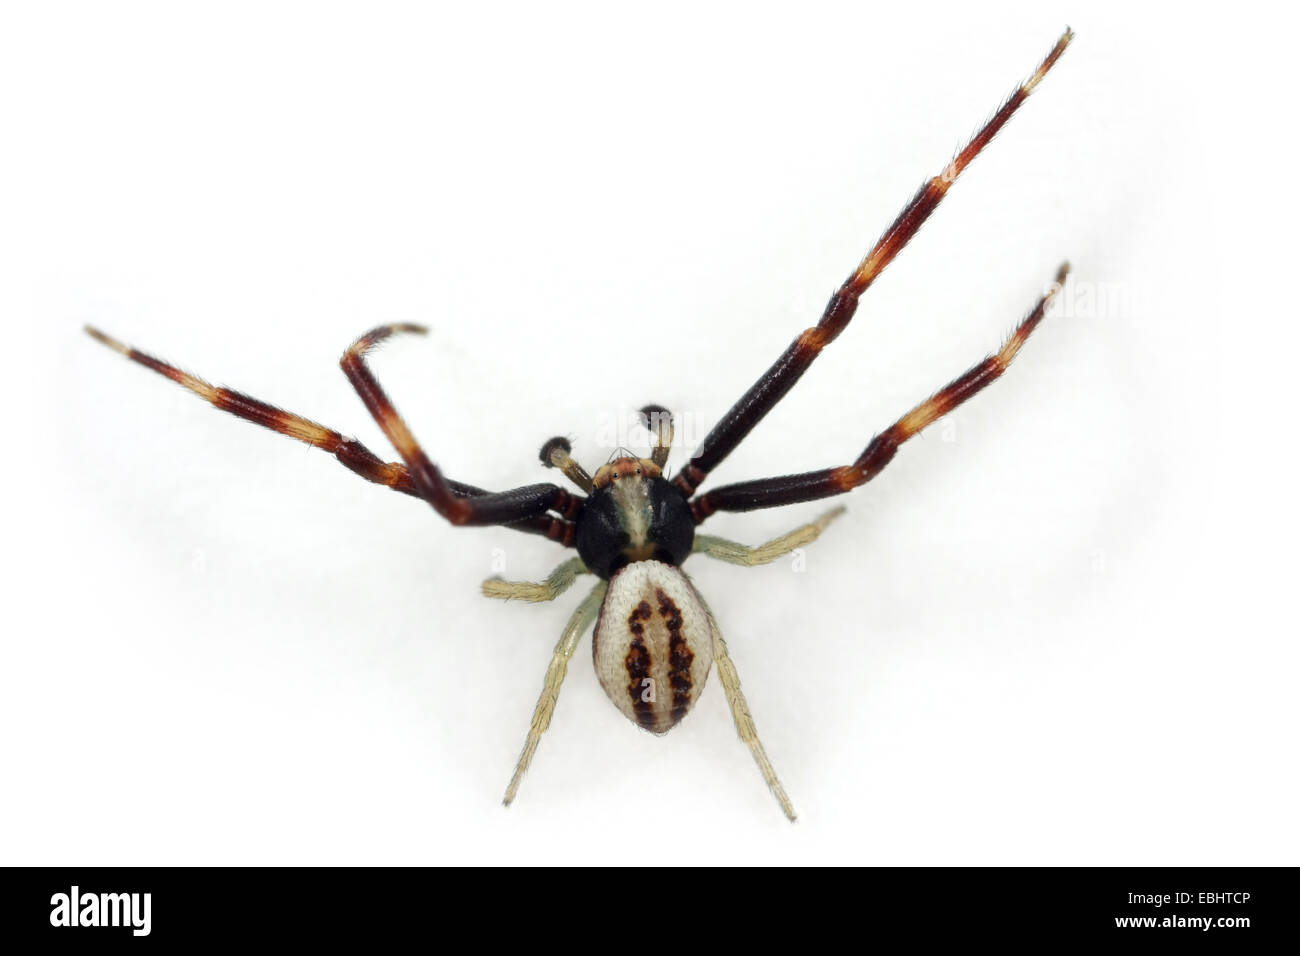 La Verge d'un homme araignée Crabe (Misumena vatia) sur fond blanc. Famille Thomisidae, araignées-crabes. Misumena a le nom commun Crabe Fleur les araignées. Banque D'Images